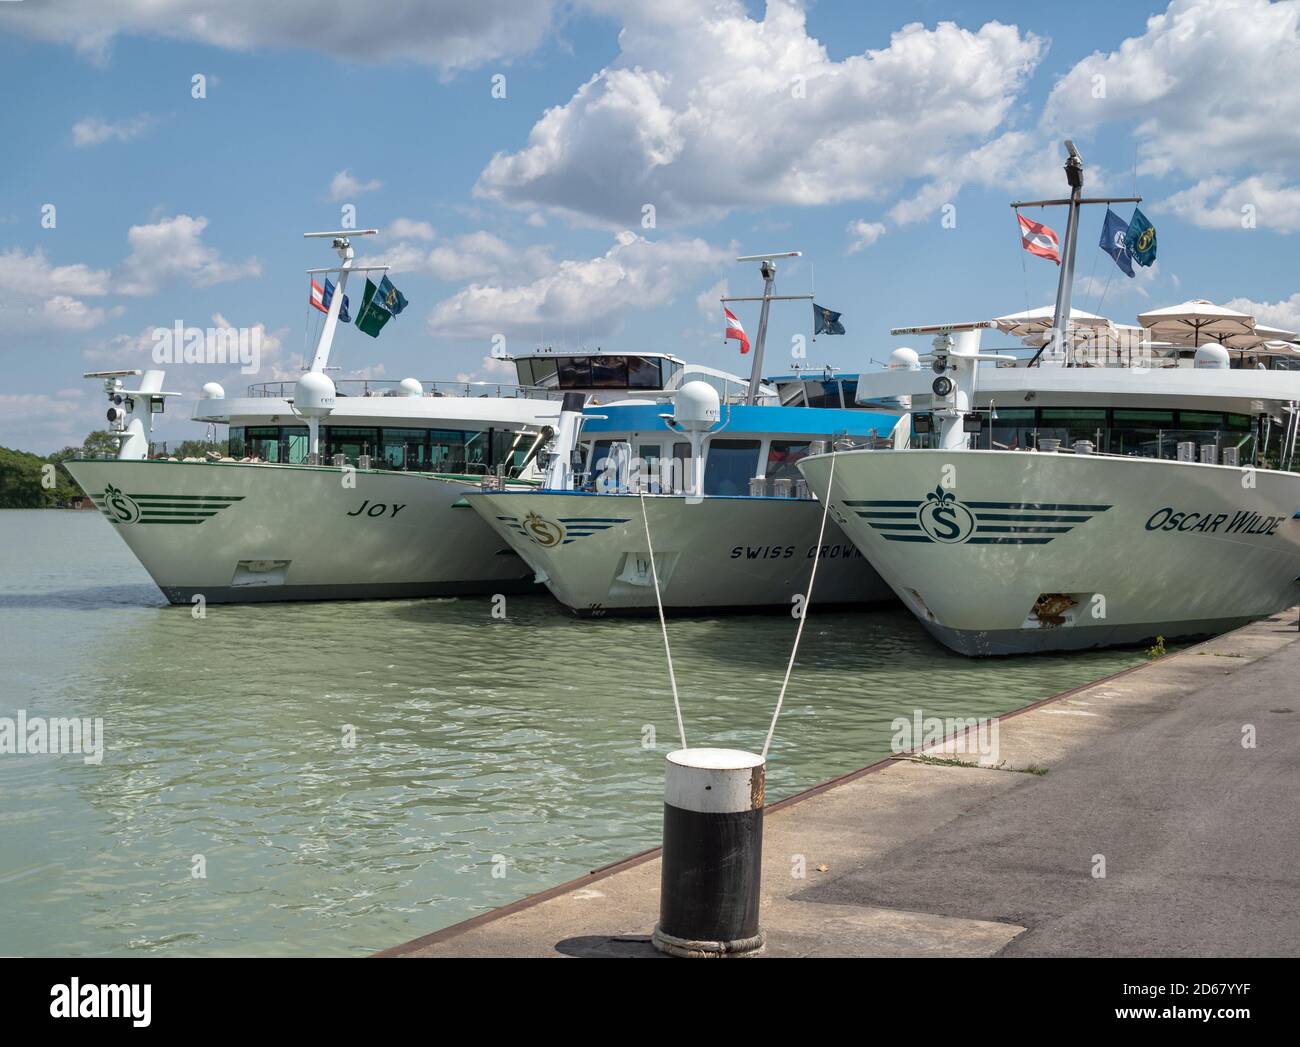 VIENNE, AUTRICHE - 15 JUILLET 2019: Scylla navires de croisière amarrés sur le Danube dans le port du fleuve Banque D'Images